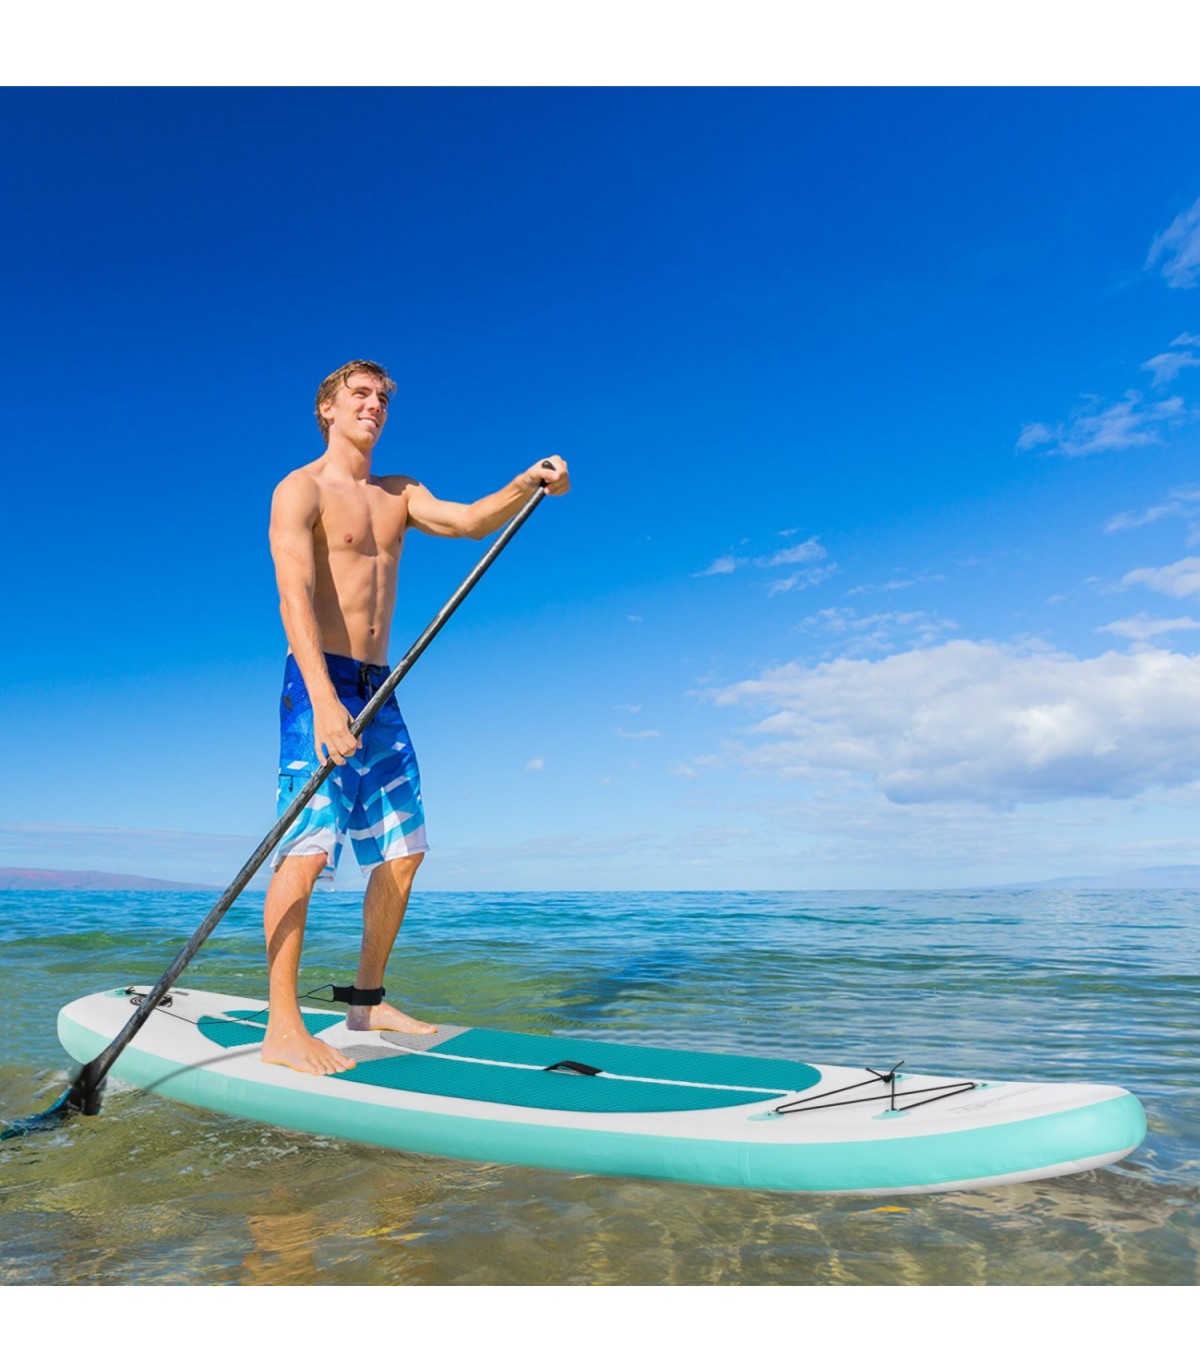 OFERTA - Tabla paddle surf hinchable 11'0 Turquesa